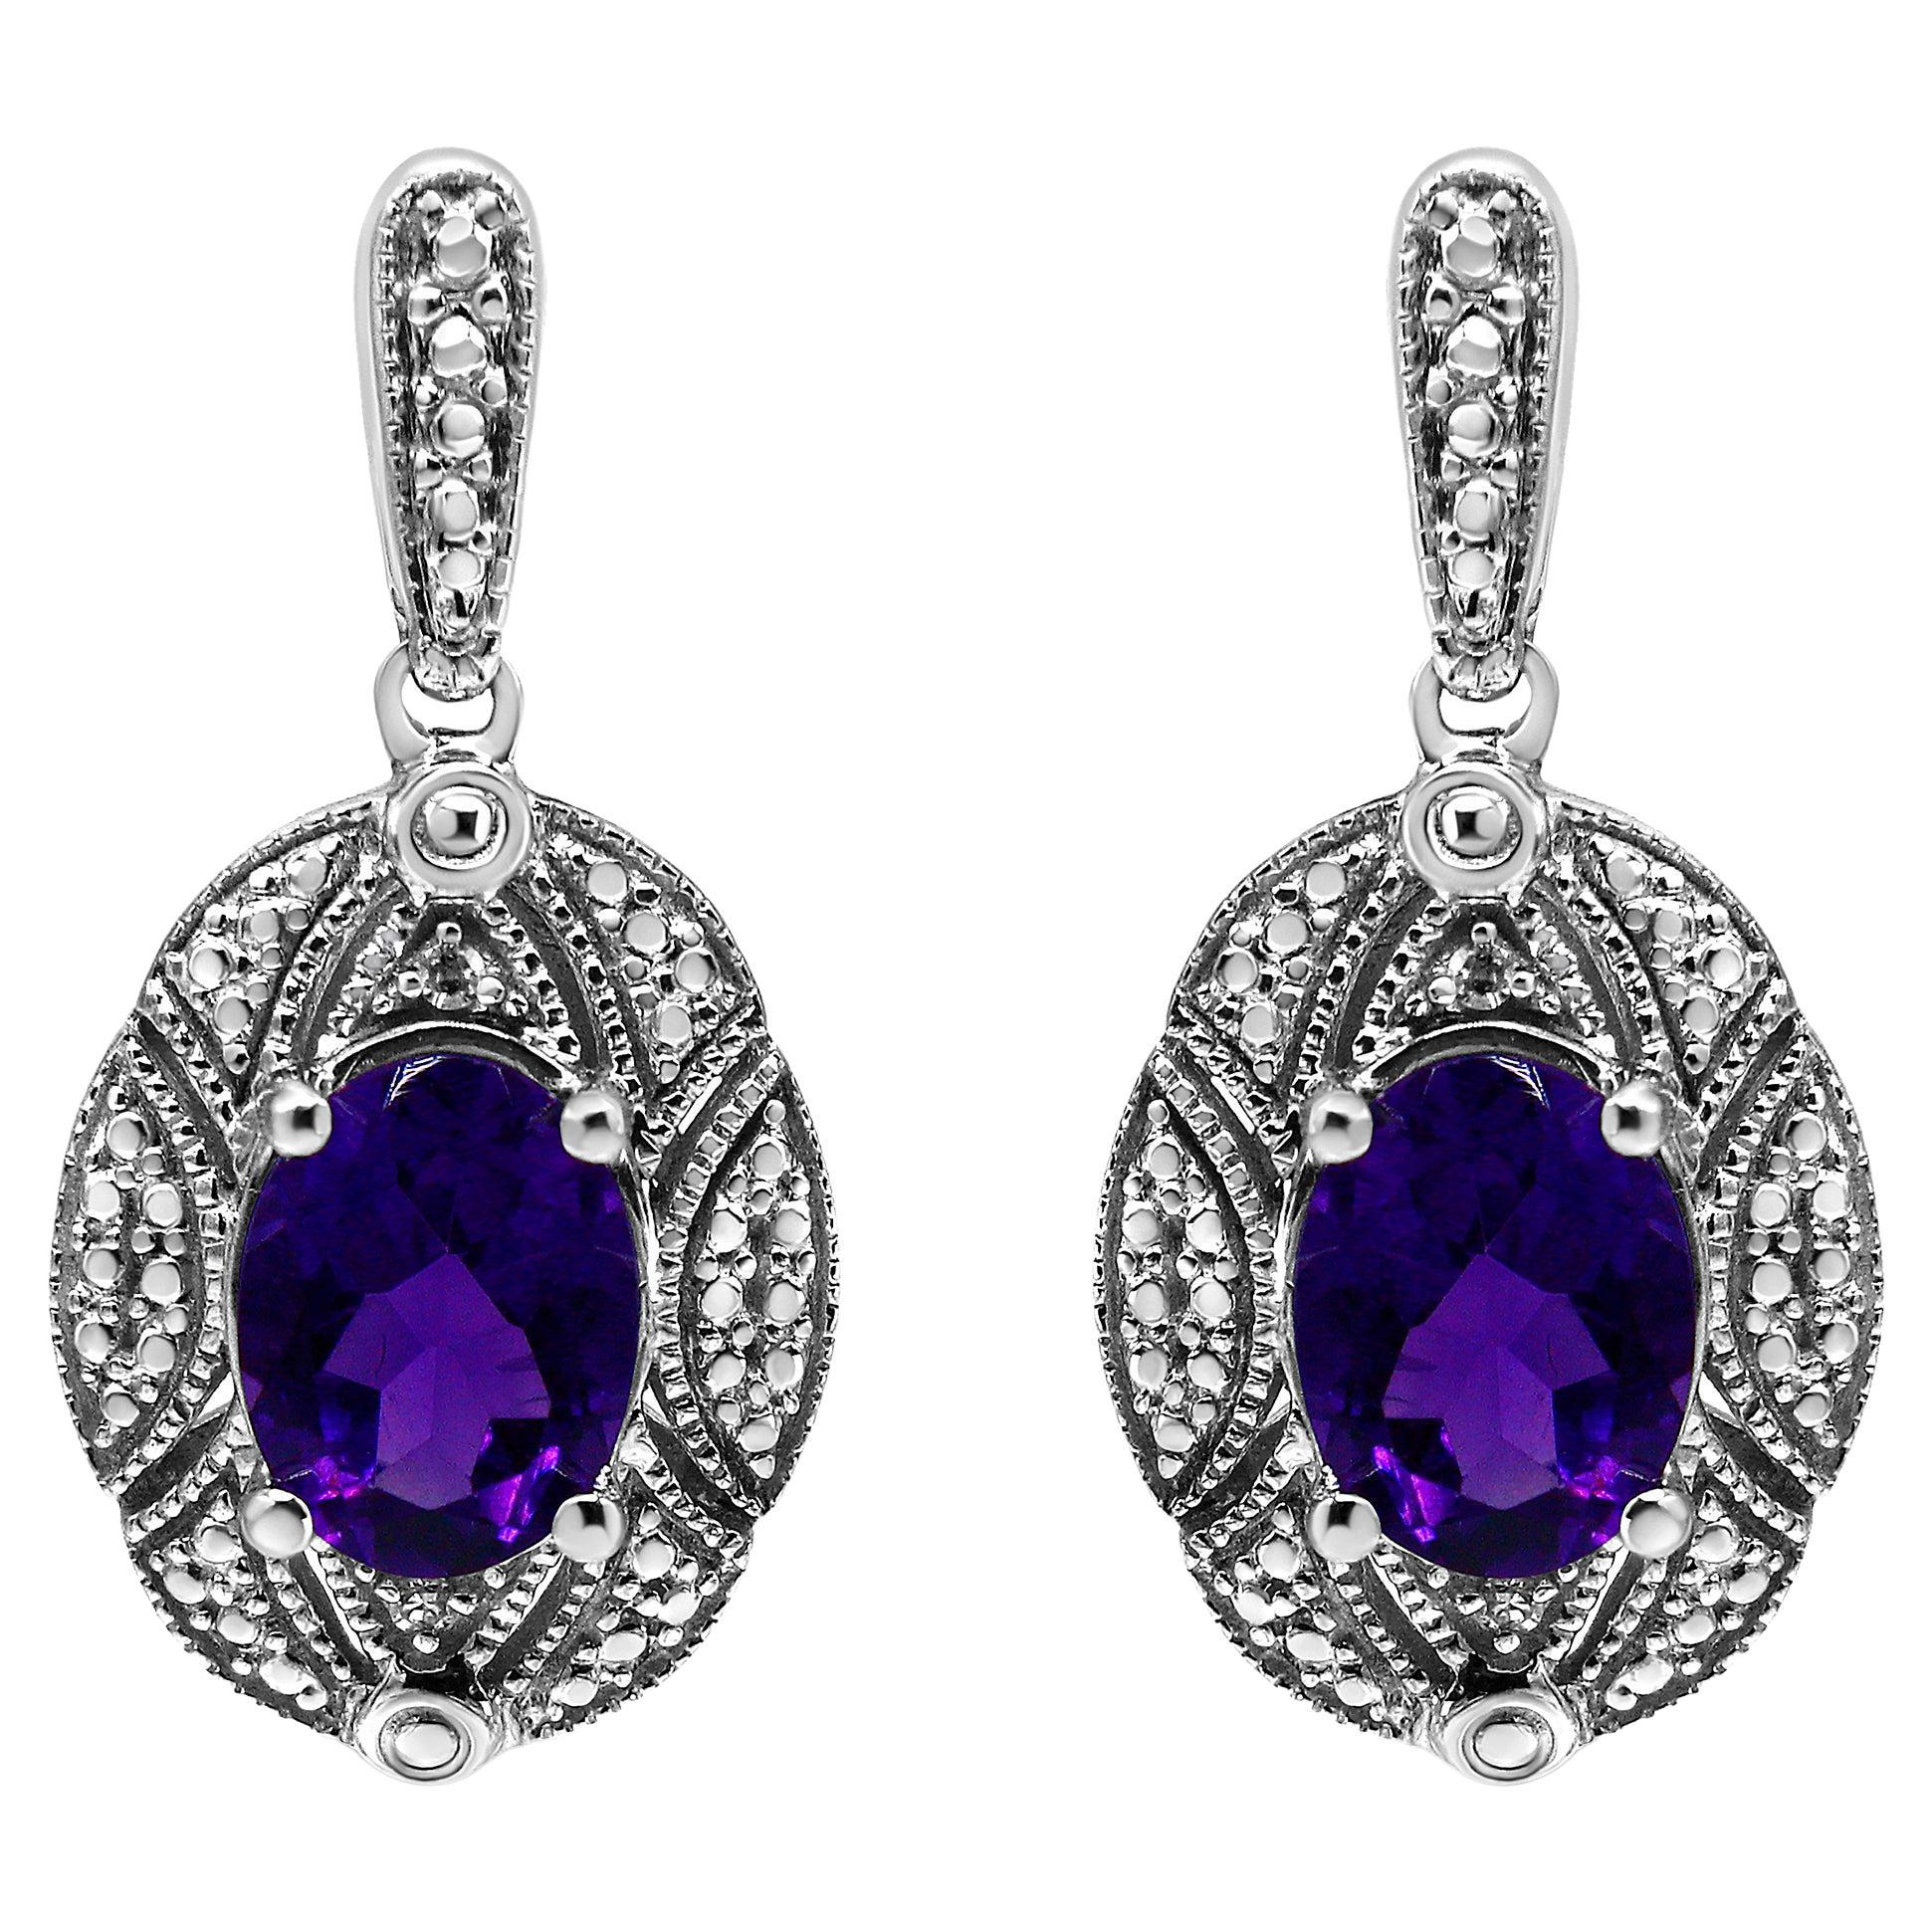 Boucles d'oreilles en argent 925 serties de diamants et d'améthystes ovales violettes